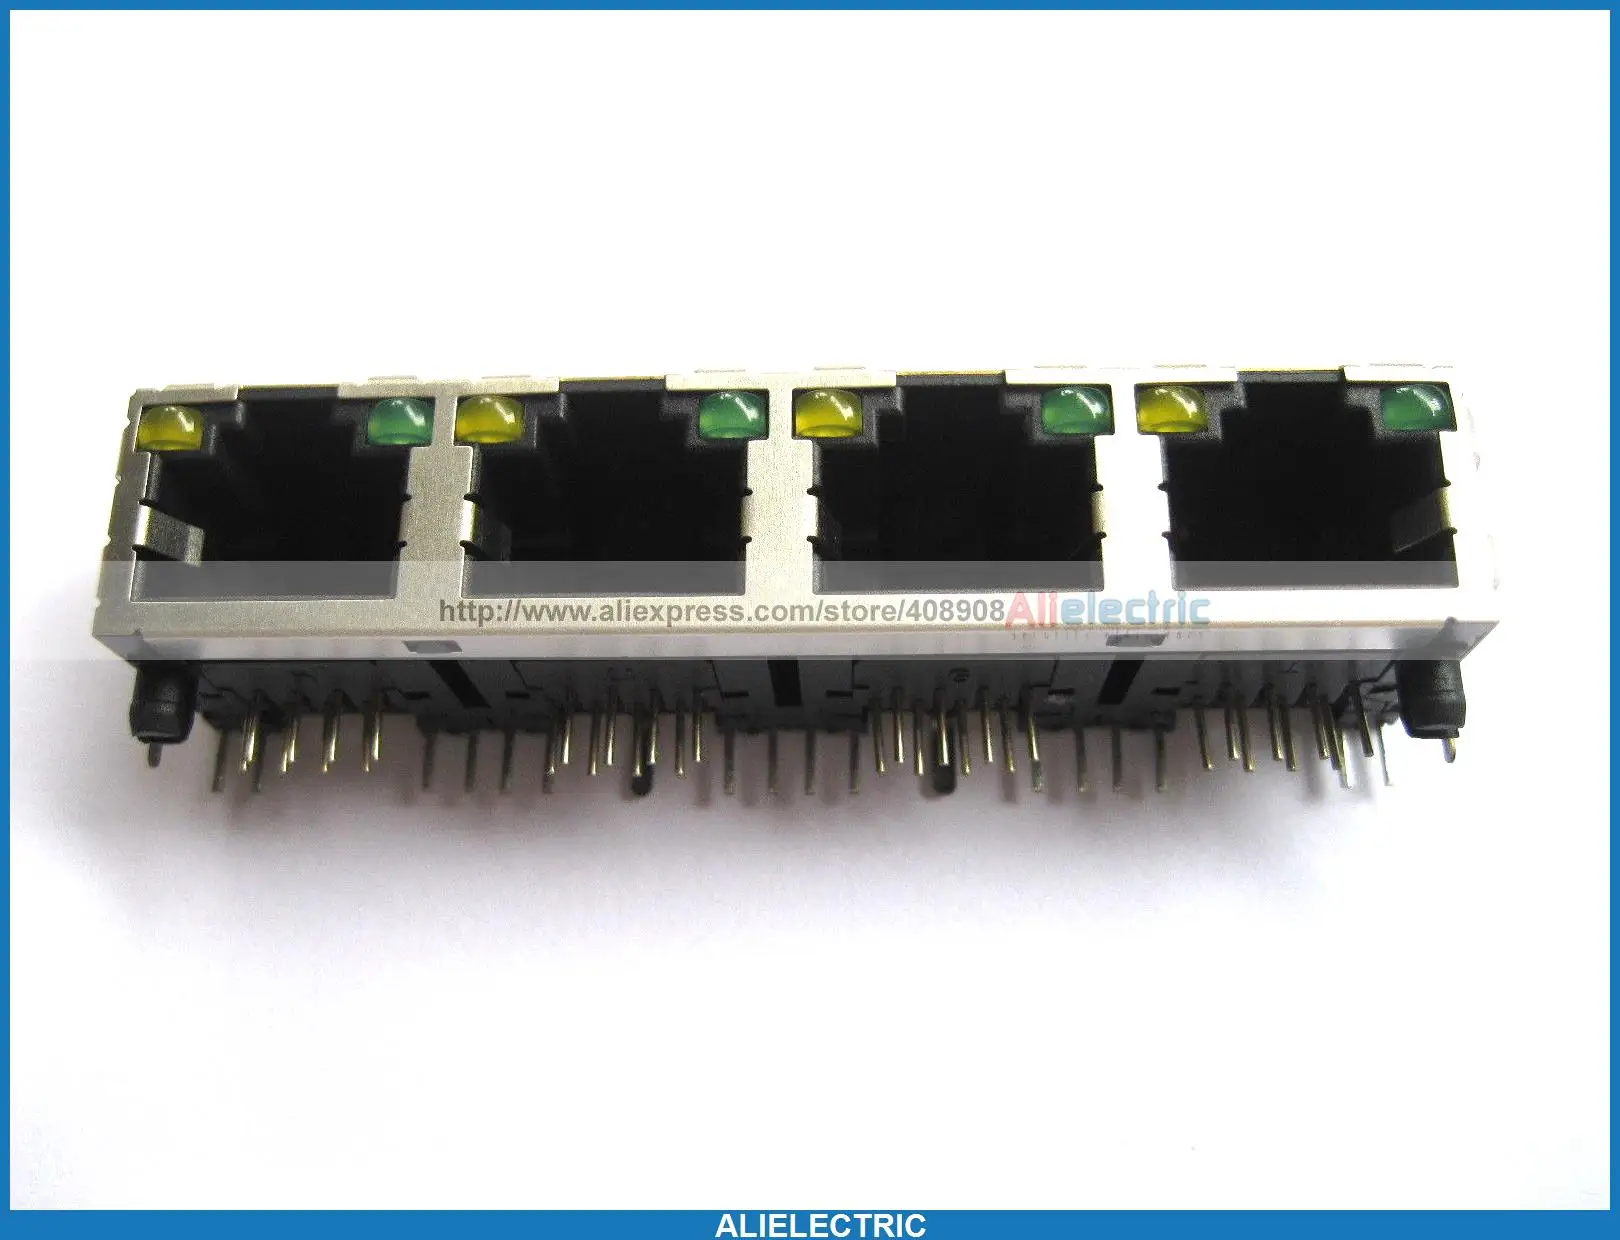 20 x RJ45 Modular Network PCB Jack 56 8P w LED 4 Ports